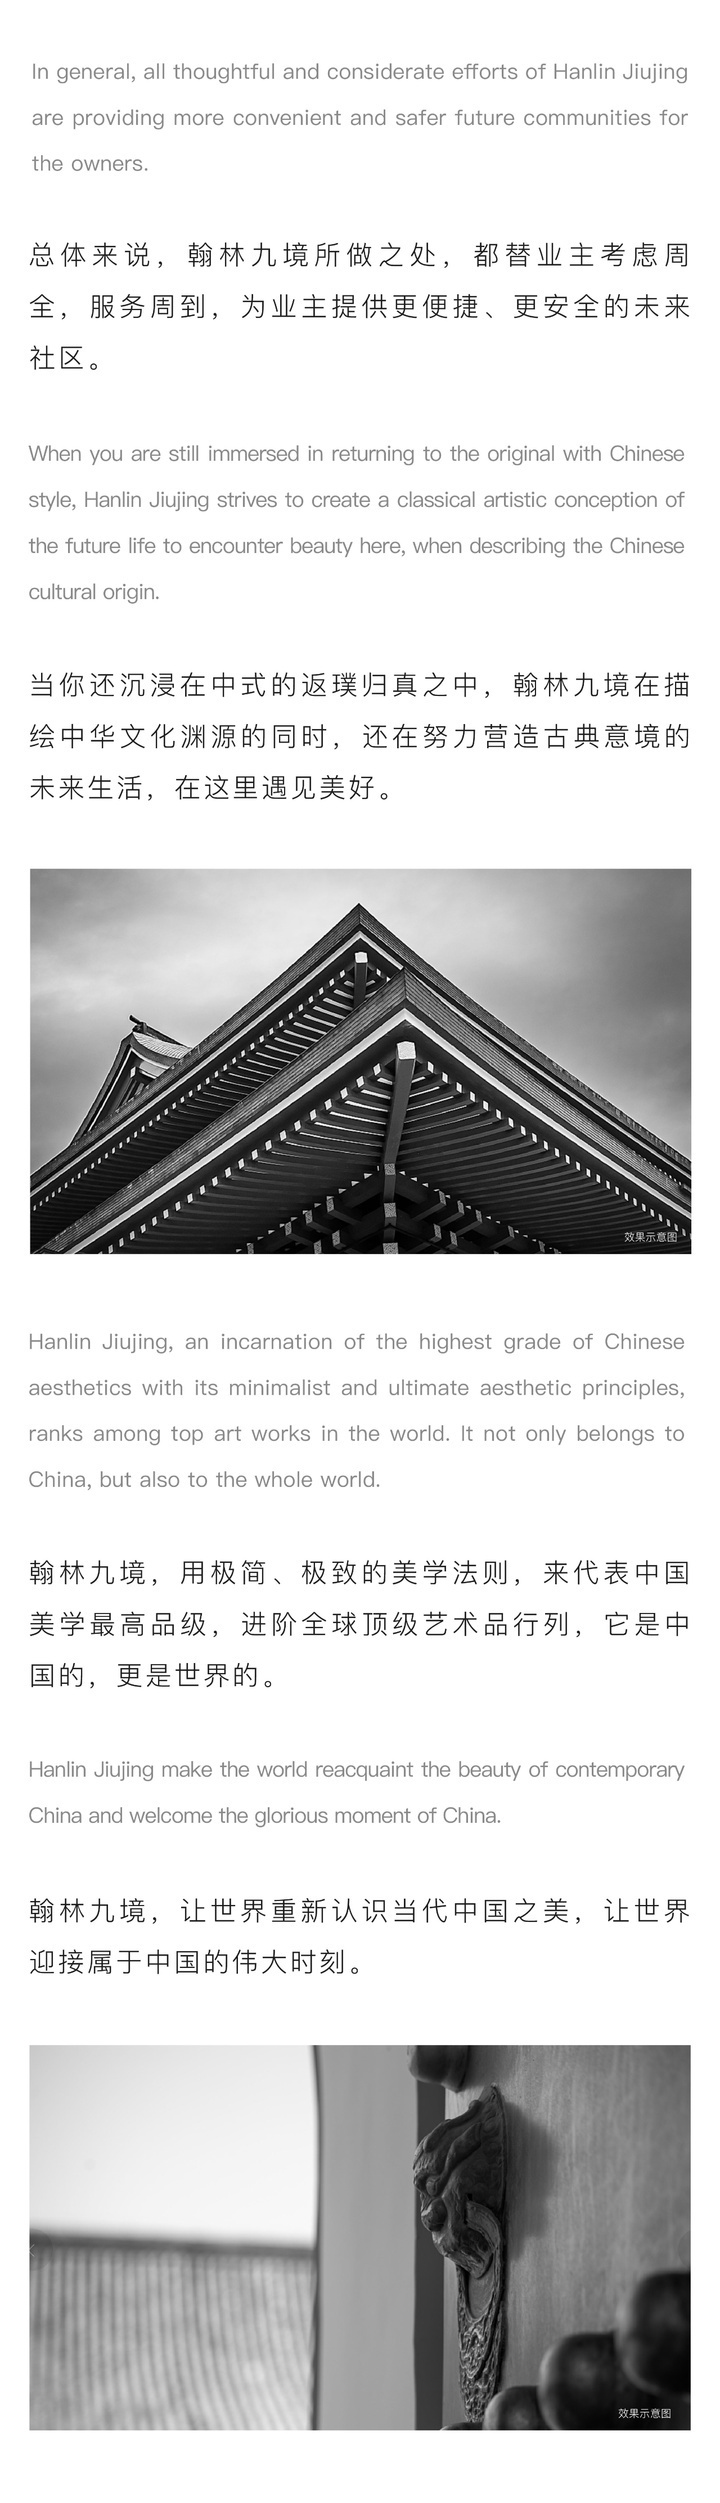 翰林九境 | 传承中国文化的伟大时刻 即将在瓯海诞生